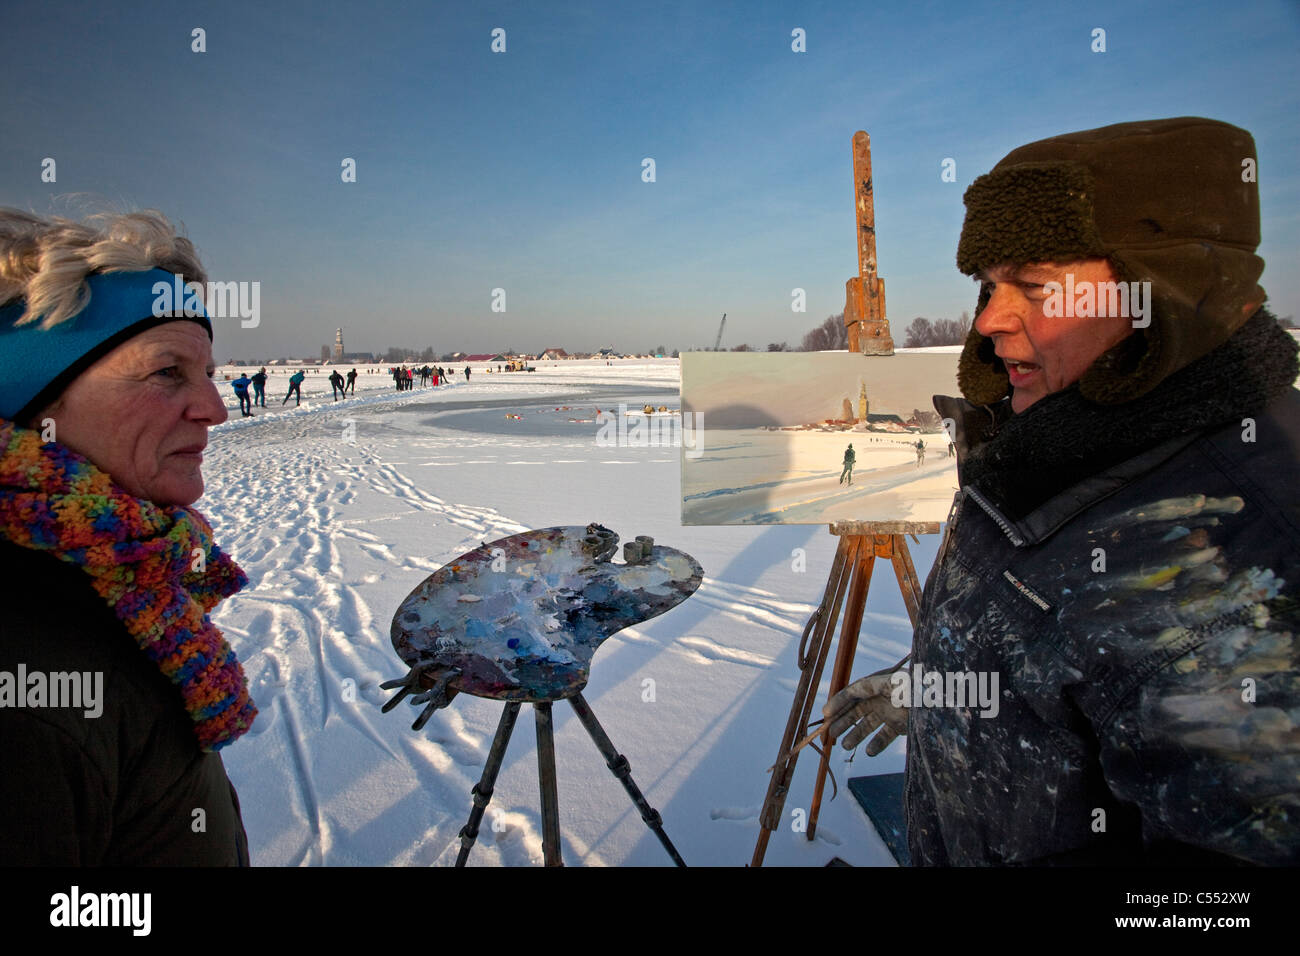 Hindeloopen, niederländische Hauptstadt skating Kultur. Maler, Künstler Gosse Koopmans Malerei der Ice skating Szene bei minus 10 Grad Celsius. Stockfoto